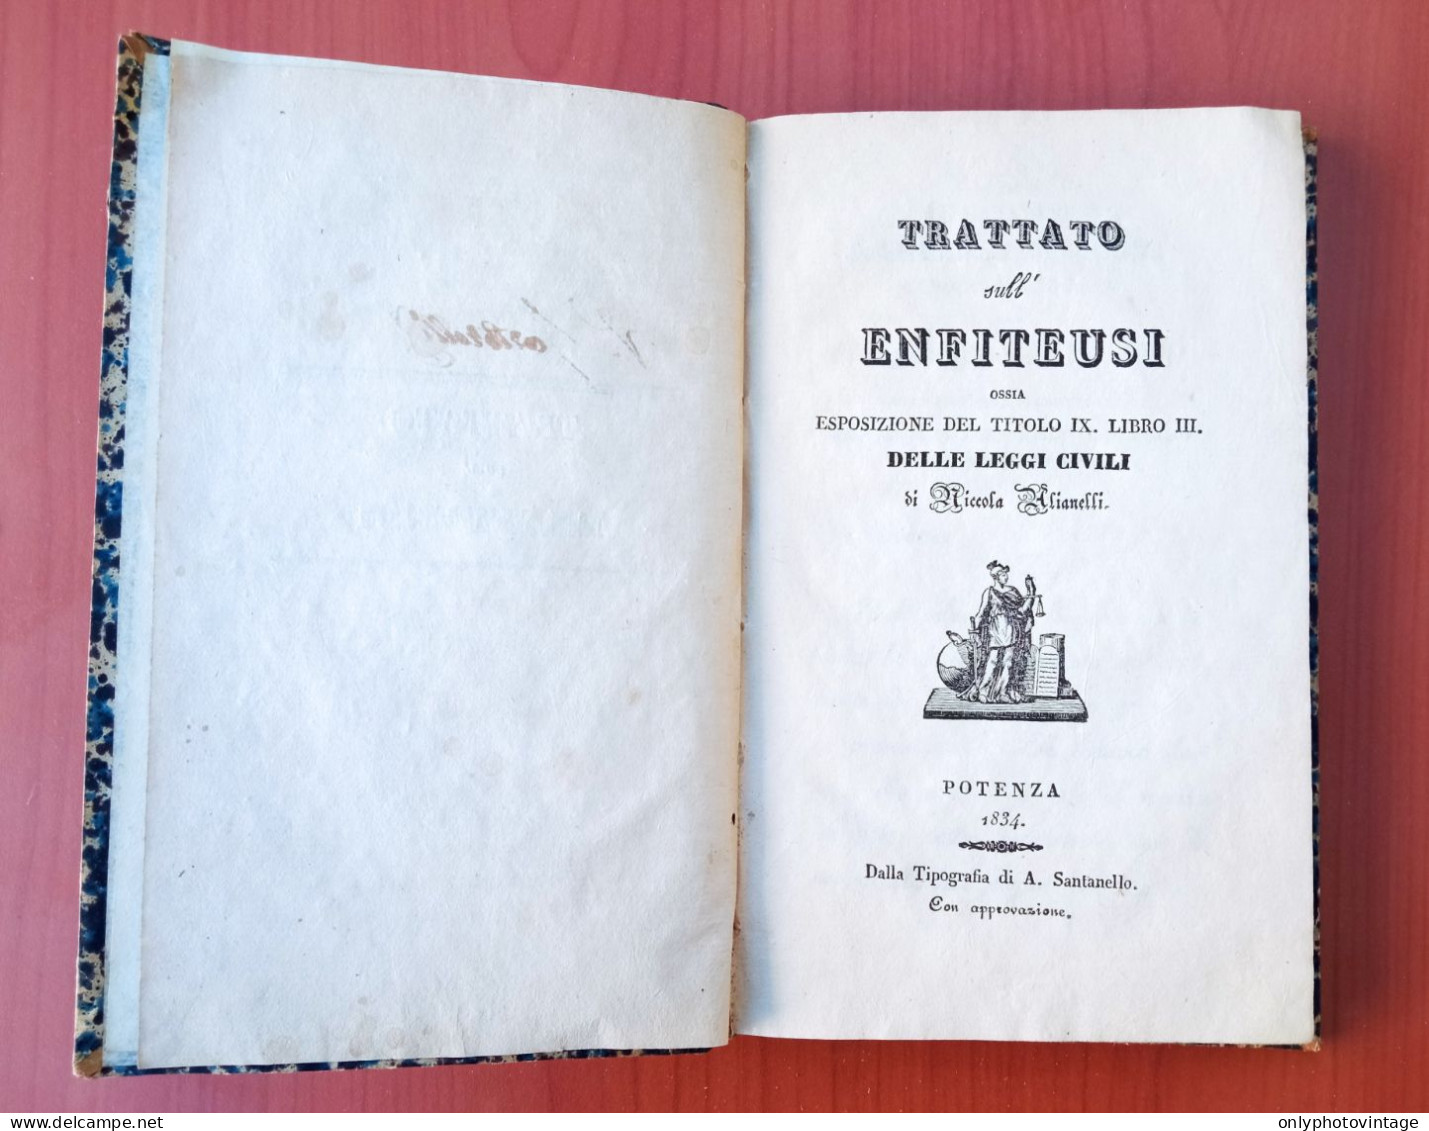 Trattato Sull'Enfiteusi, Piccola Alianelli, Potenza 1834, A. Santanello, Libro Antico - Old Books